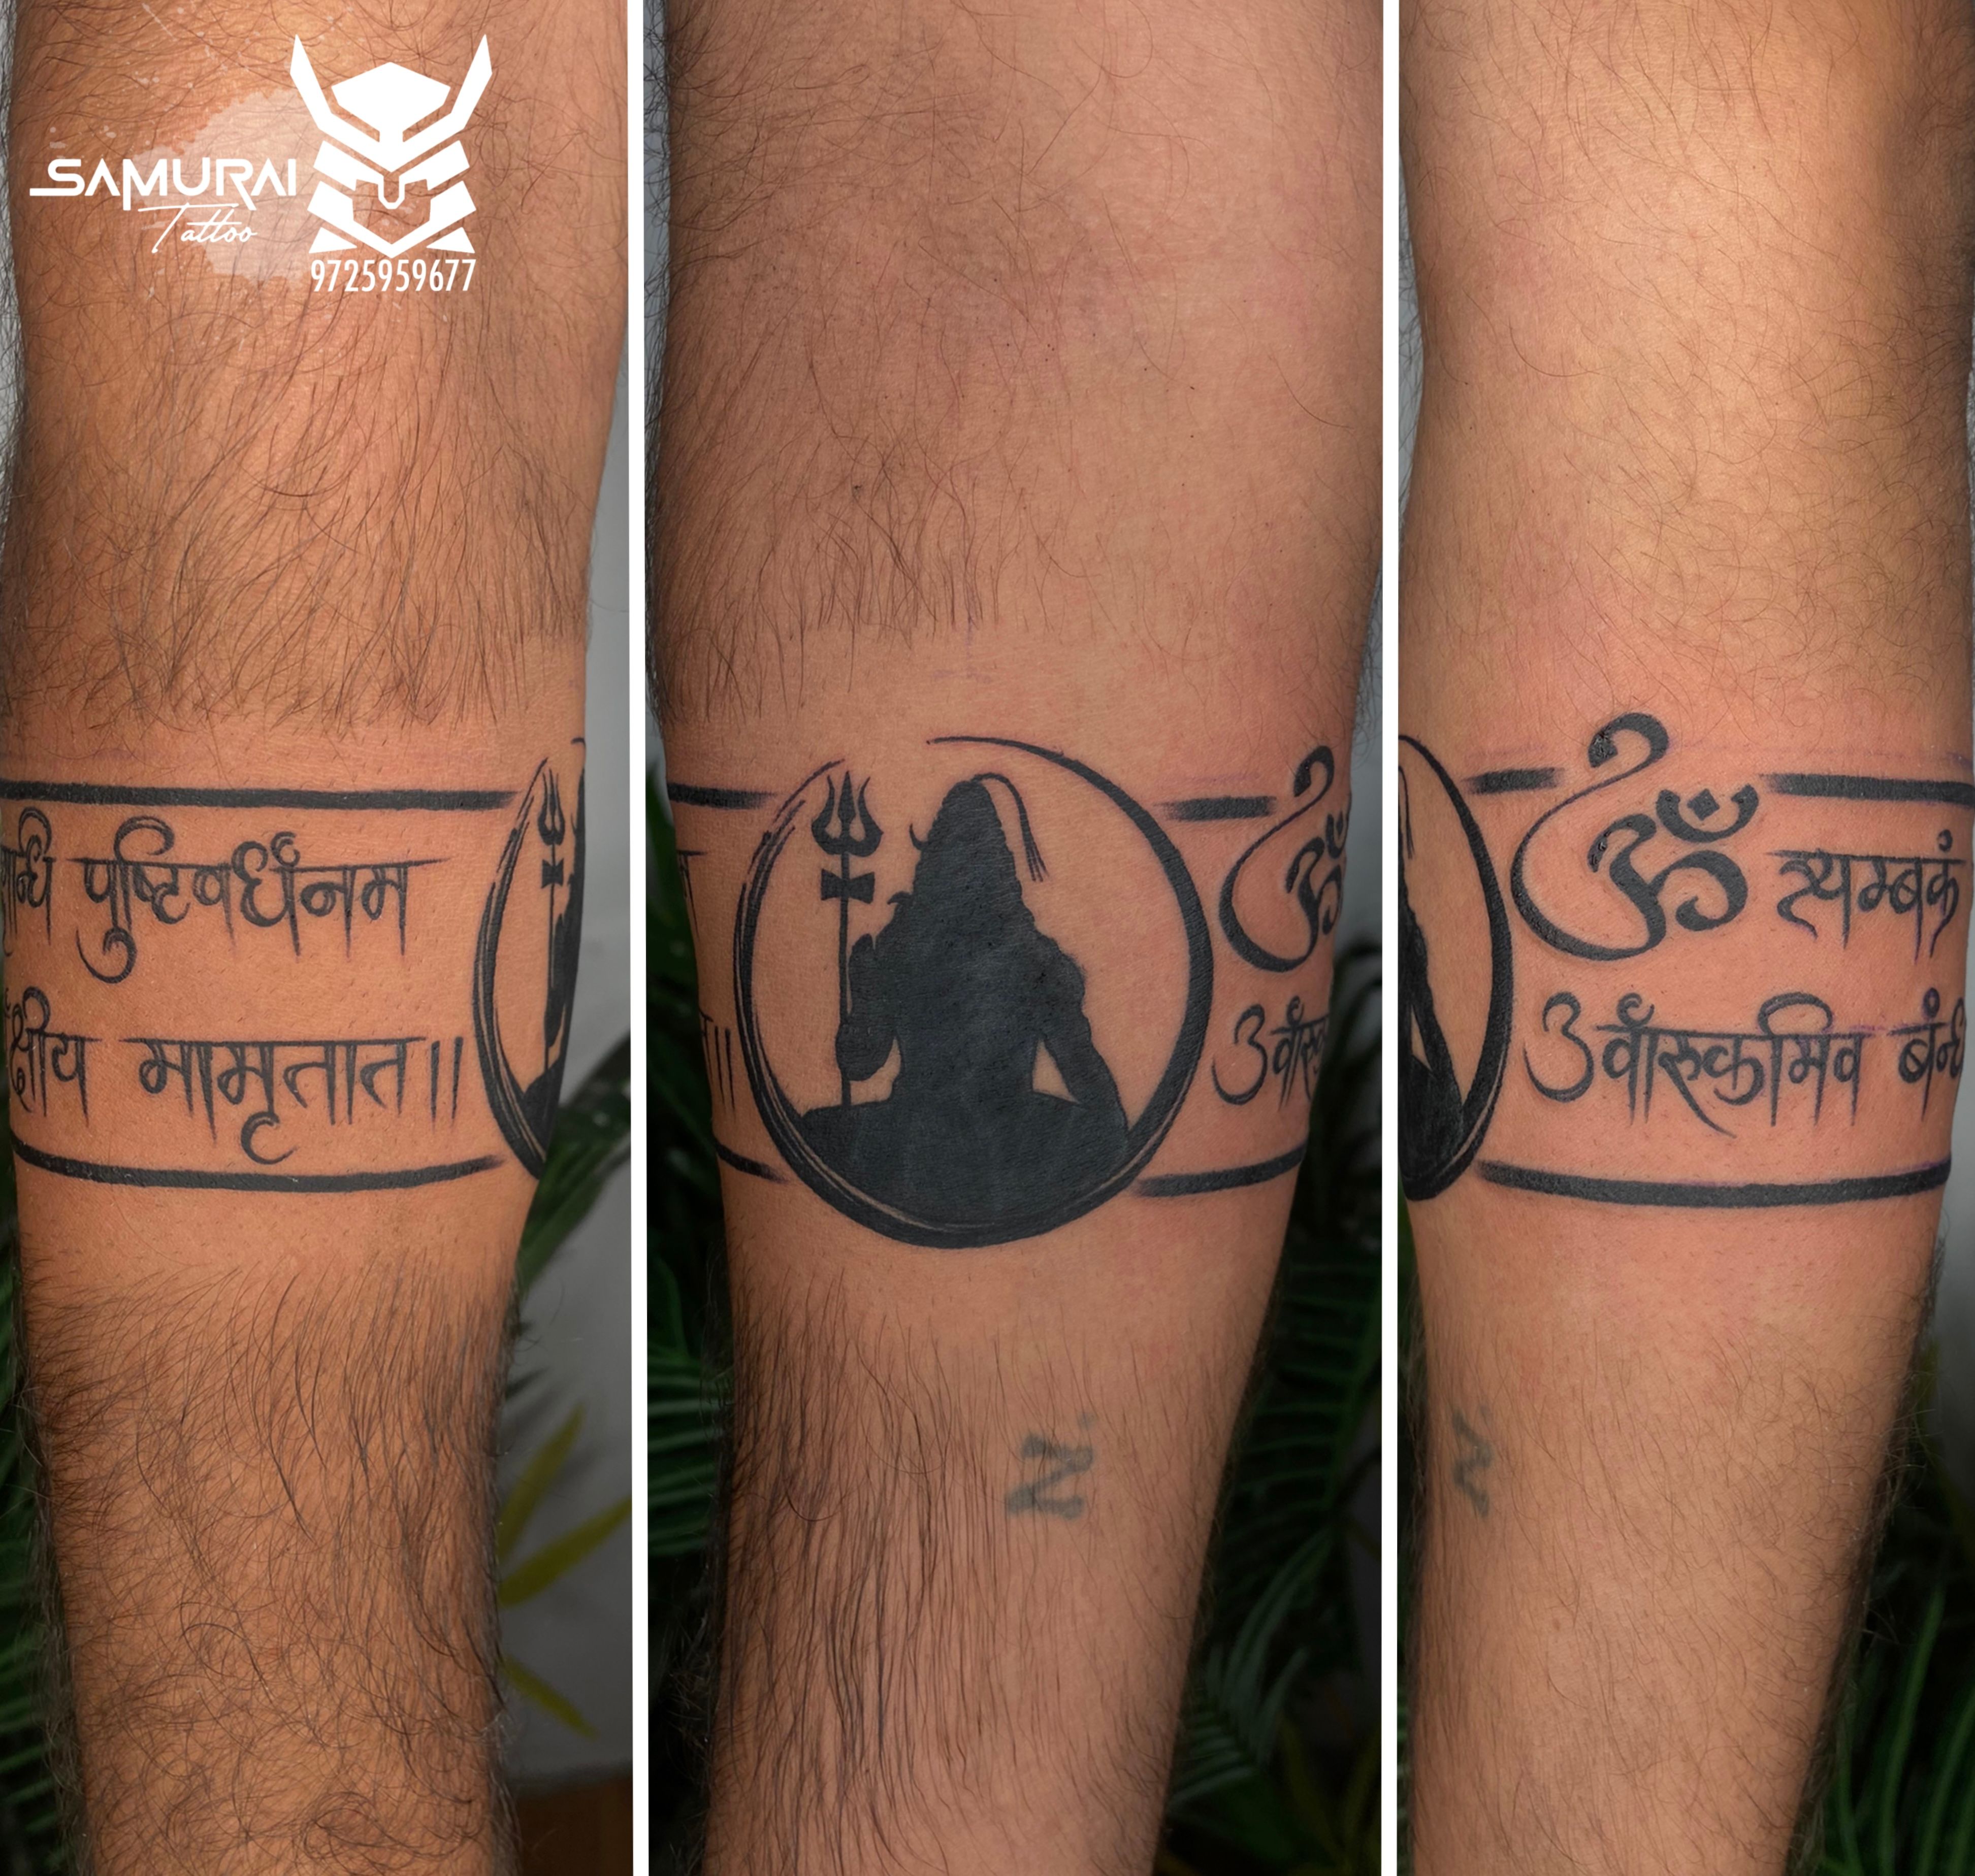 Tattoo uploaded by Samurai Tattoo mehsana  Mahadev tattoo Shiva tattoo  Mahadev tattoo ideas Shiva tattoo design  Tattoodo